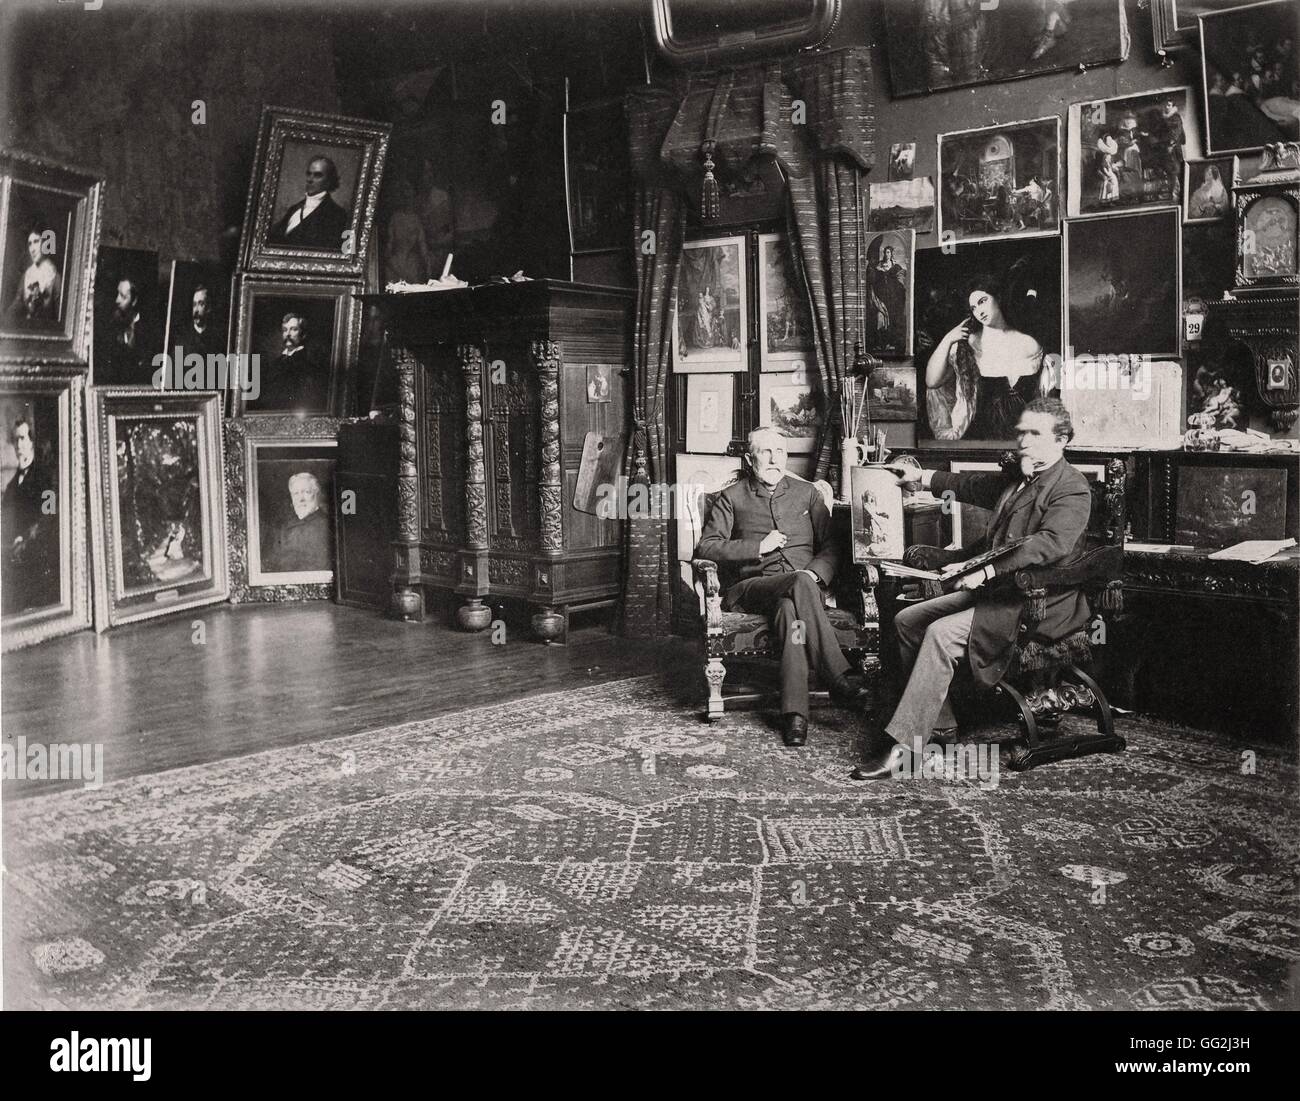 Amerikanischer Porträtist Maler George Peter Alexander Healy in seinem Atelier in Paris. Foto von Edmond Bénard c.1885. Albumen print. Stockfoto